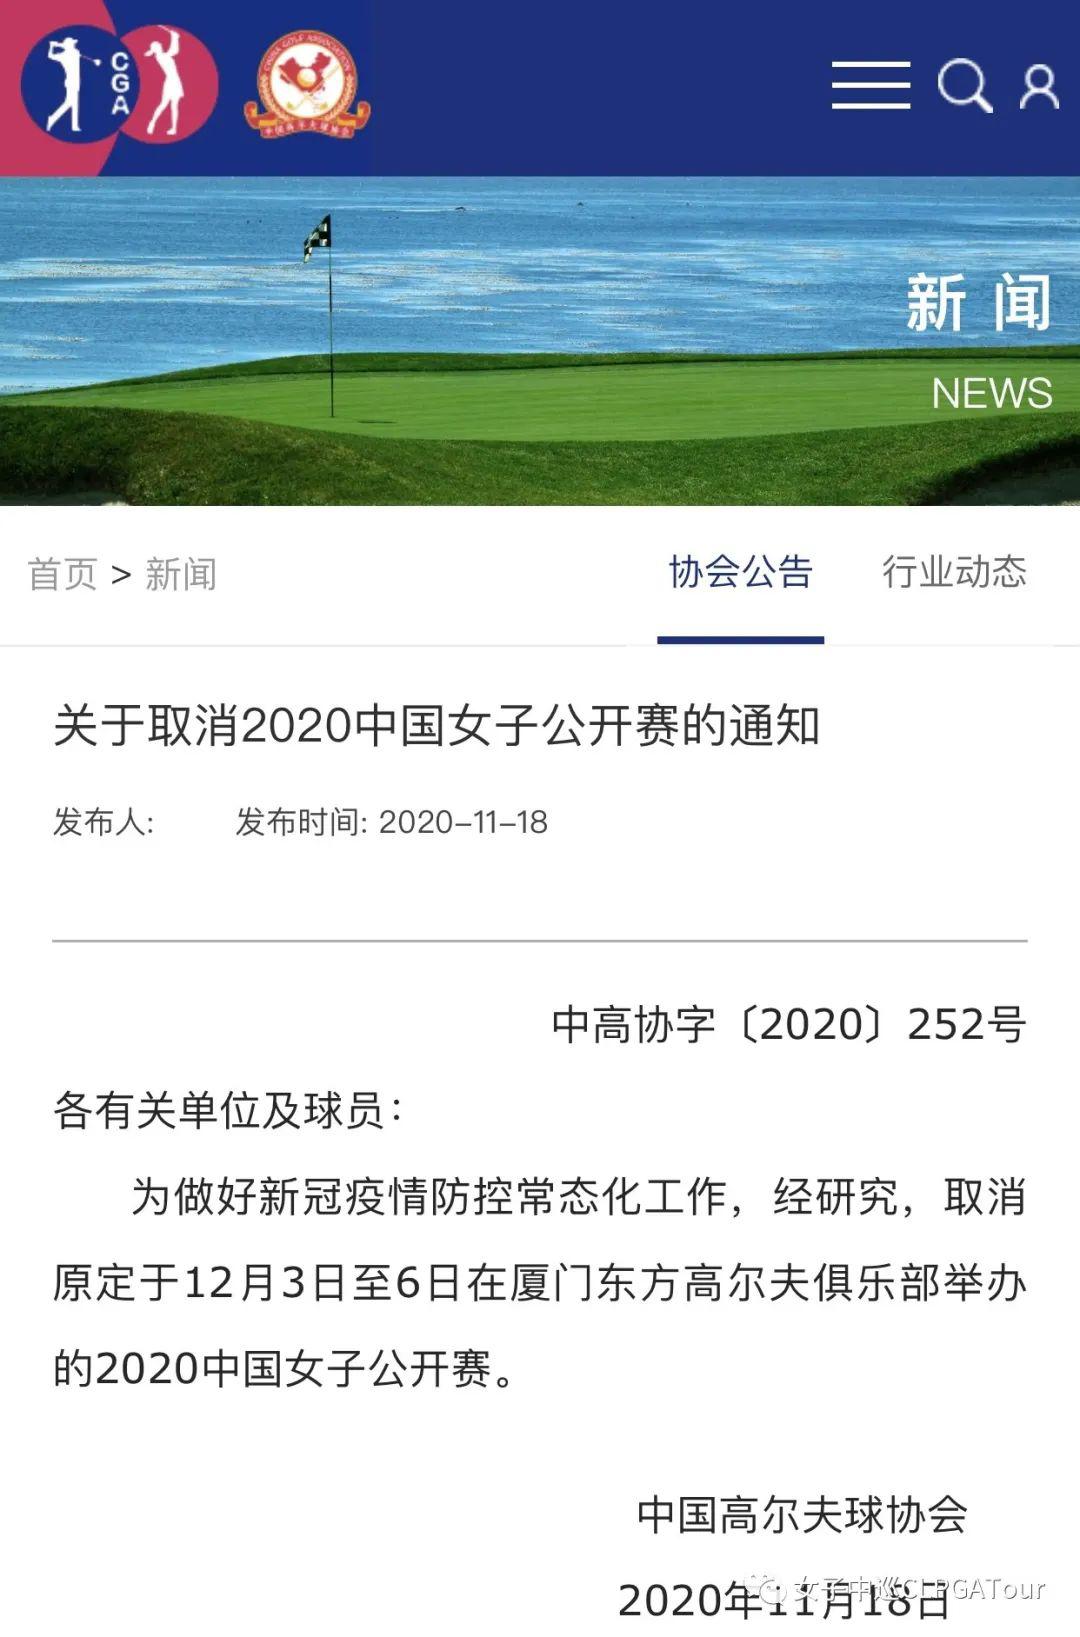 关于2020中国女子公开赛停办的通知